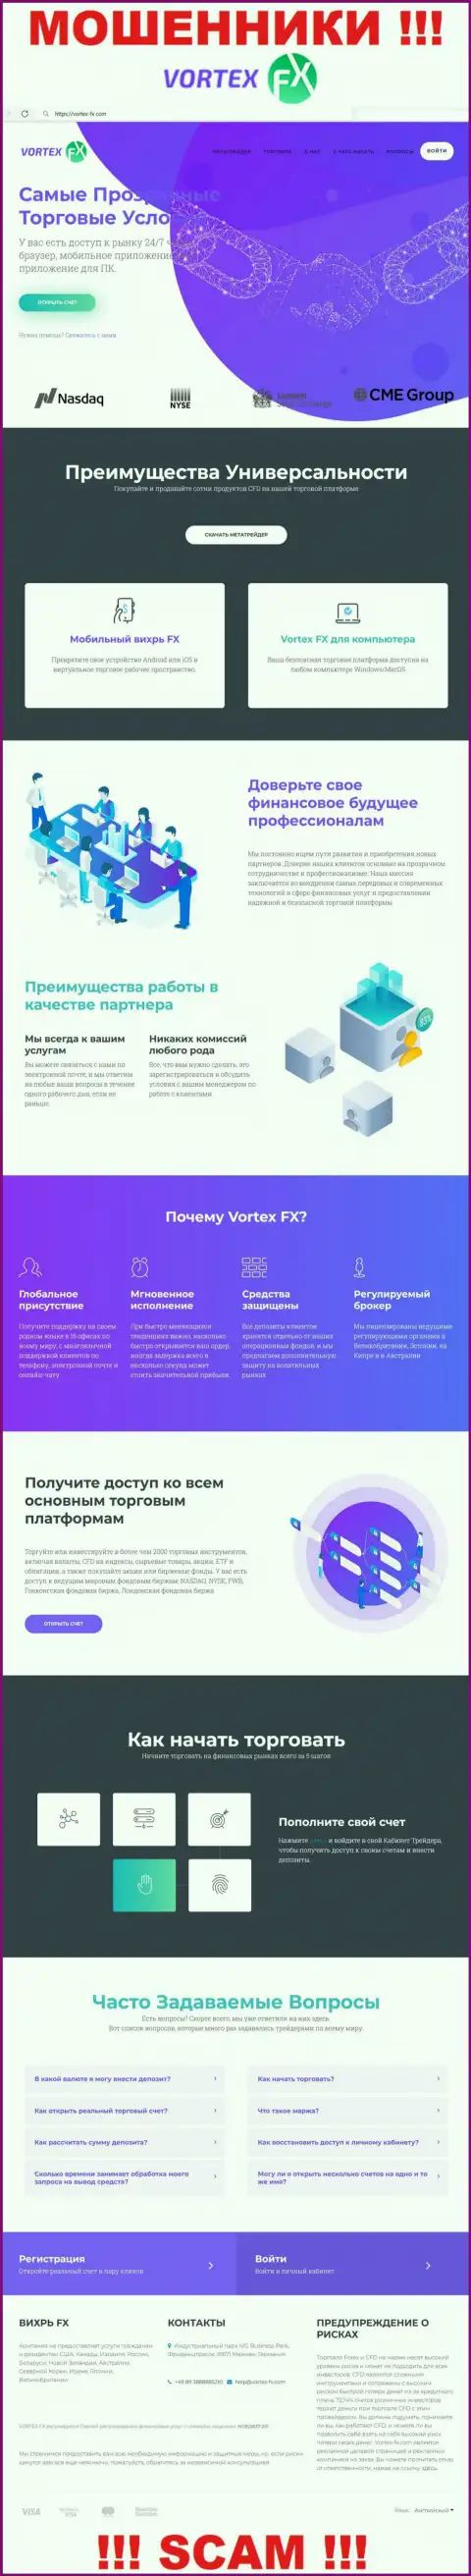 Информационный портал организации Vortex-FX Com, заполненный лживой информацией